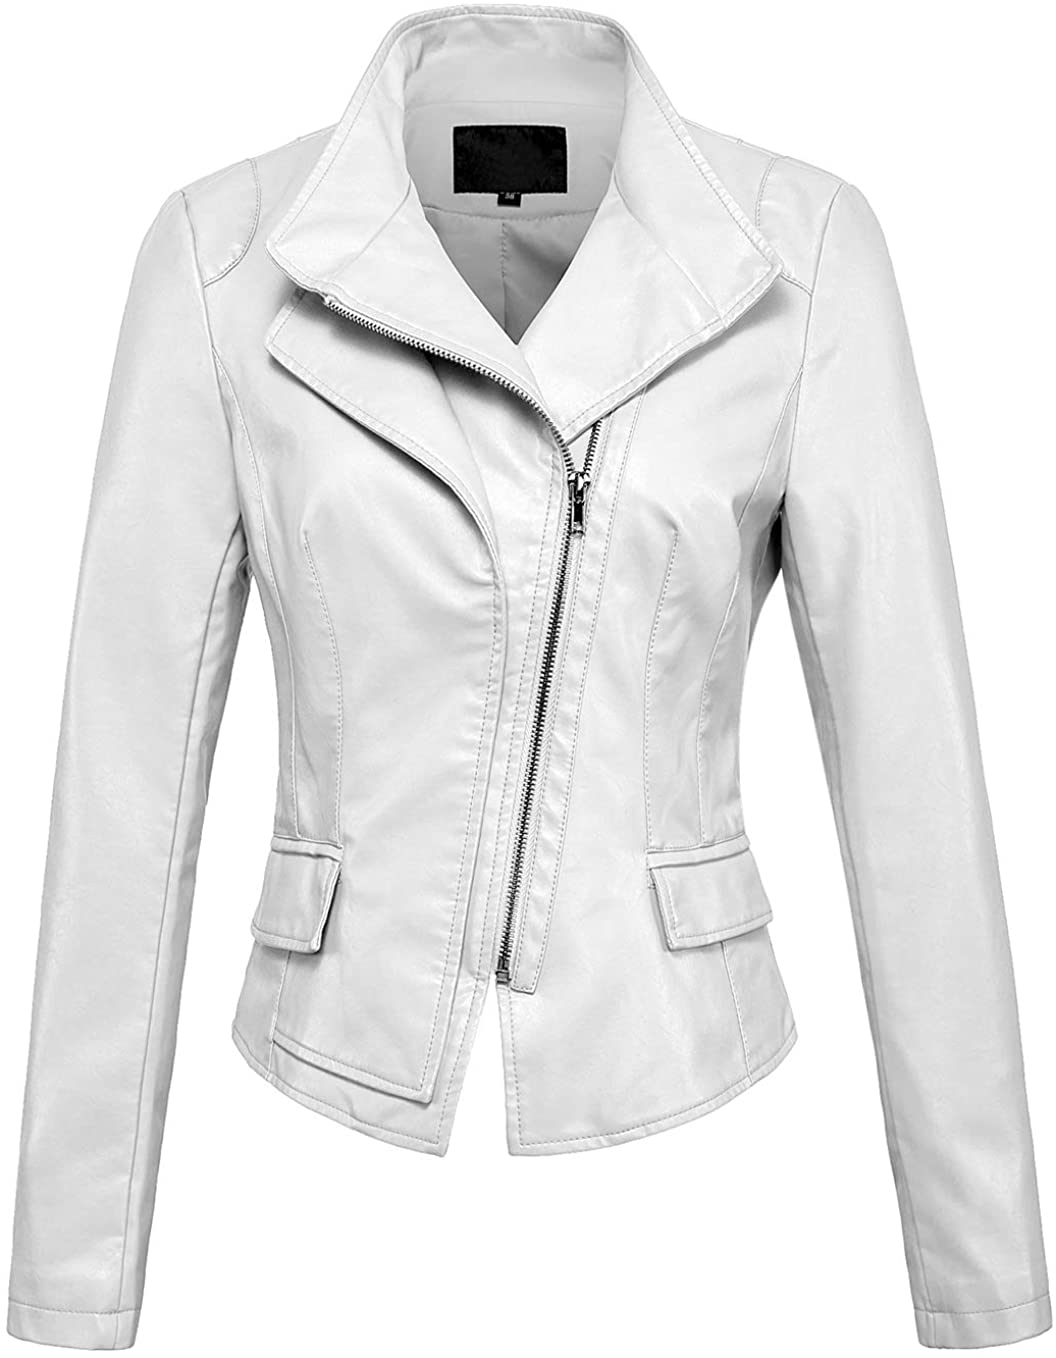 chouyatou Women's Stylish Oblique Zip Slim Faux Leather Biker Outerwear Jacket